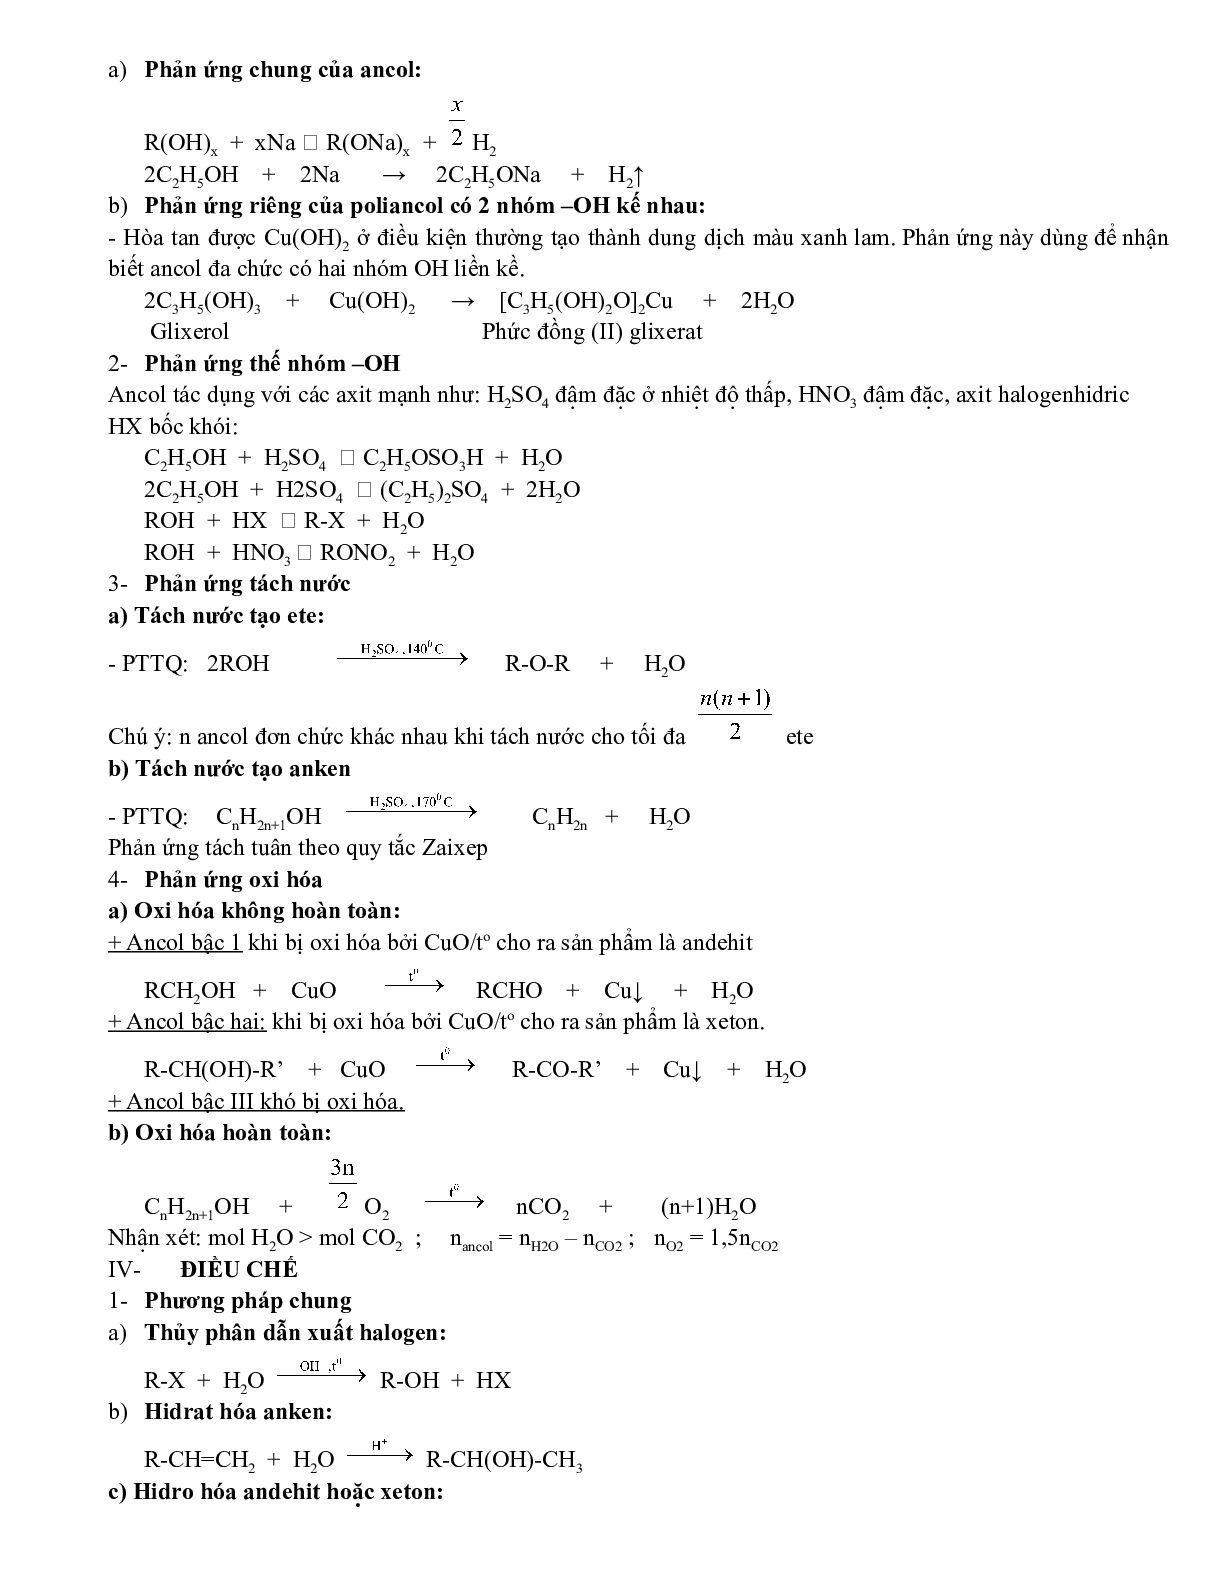 Lý thuyết, bài tập về dẫn xuất halogen-ancol-phenol có đáp án, chọn lọc (trang 4)